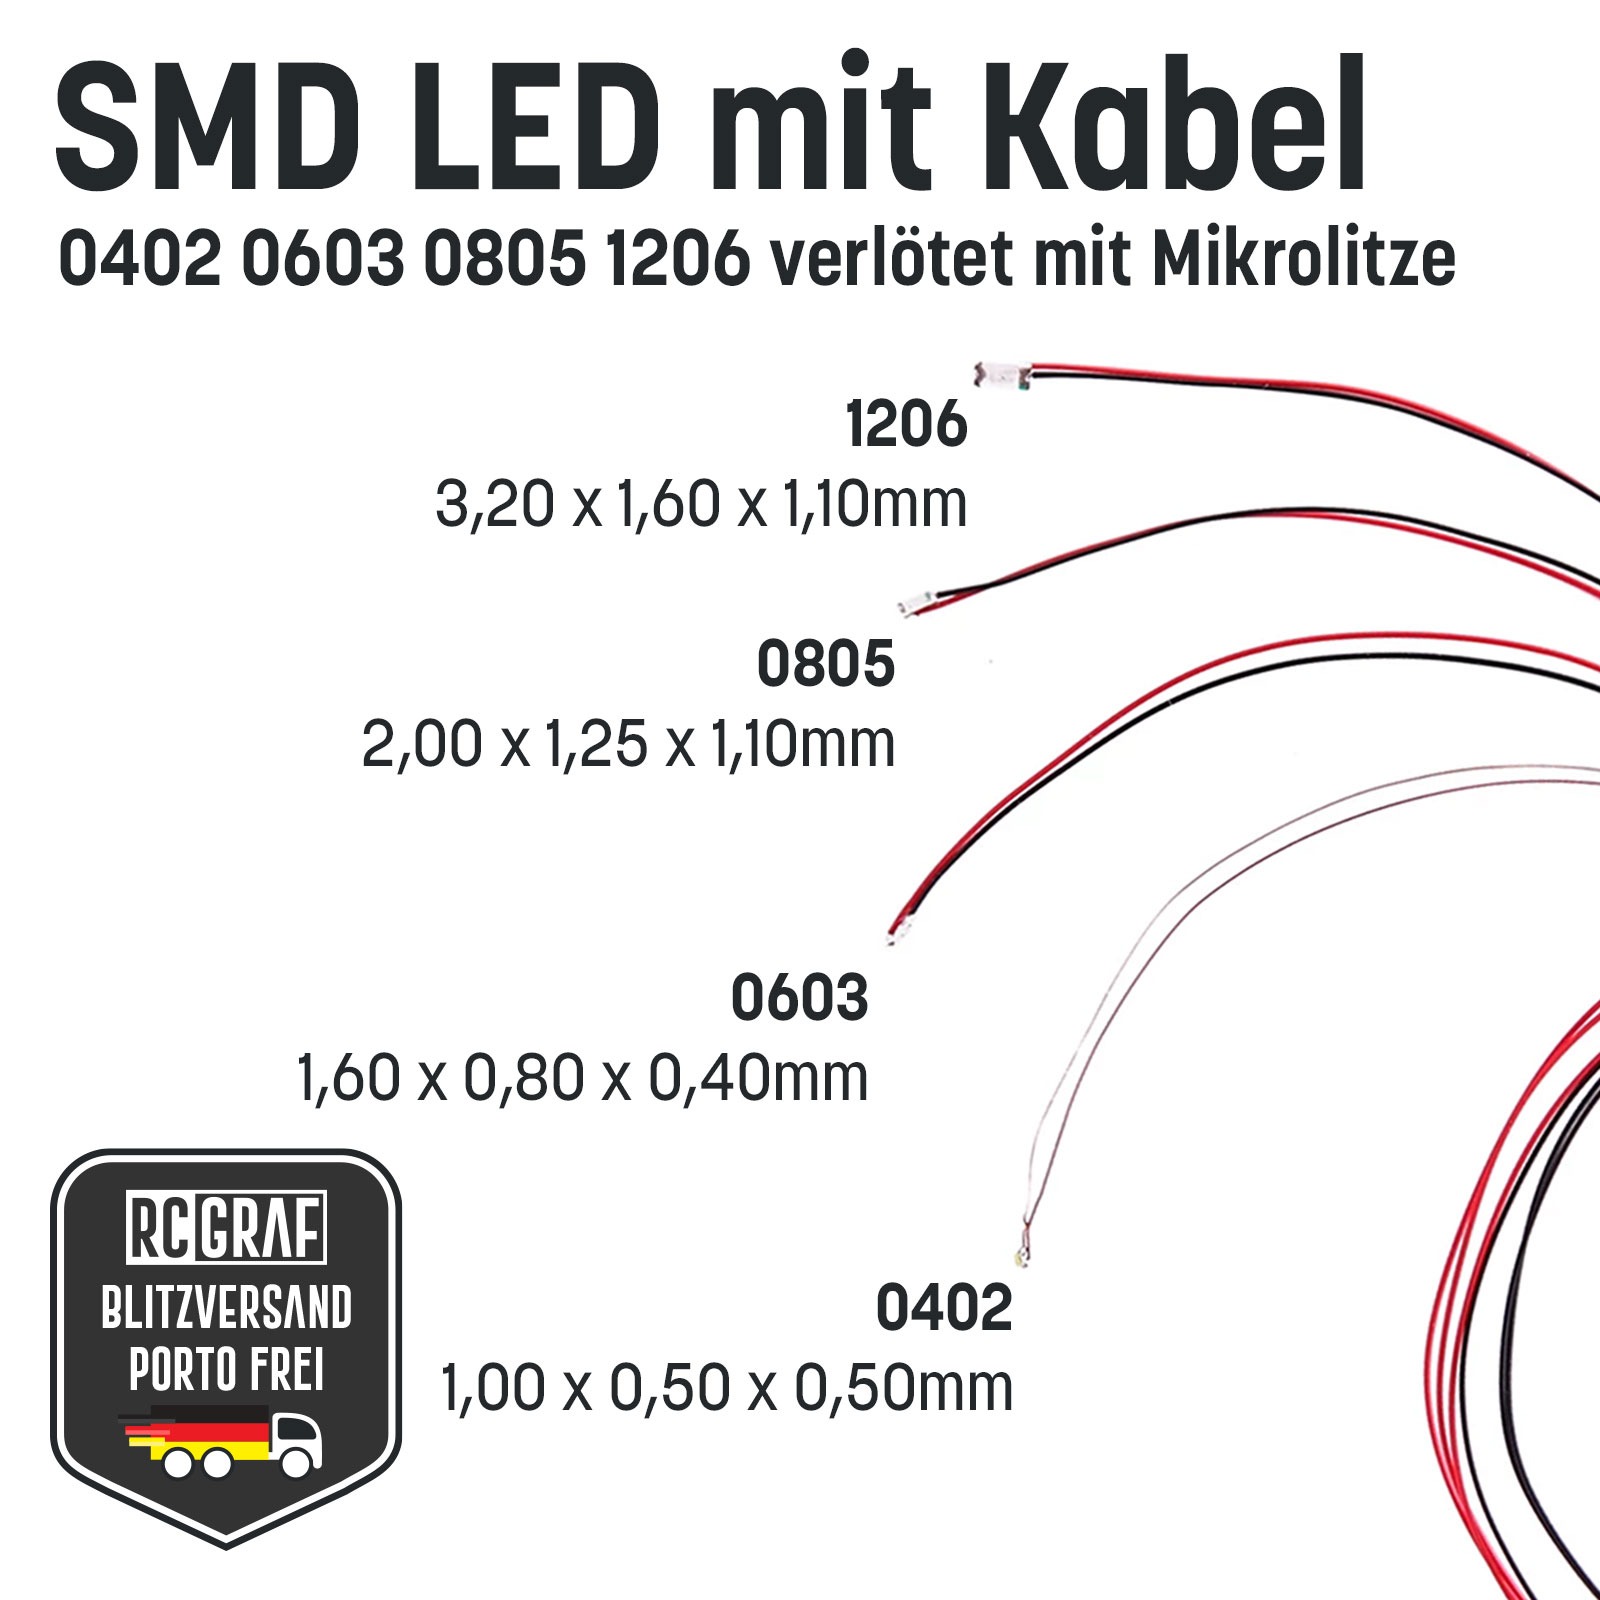 SMD LED 1206 Microlitze 30cm verlötet 9